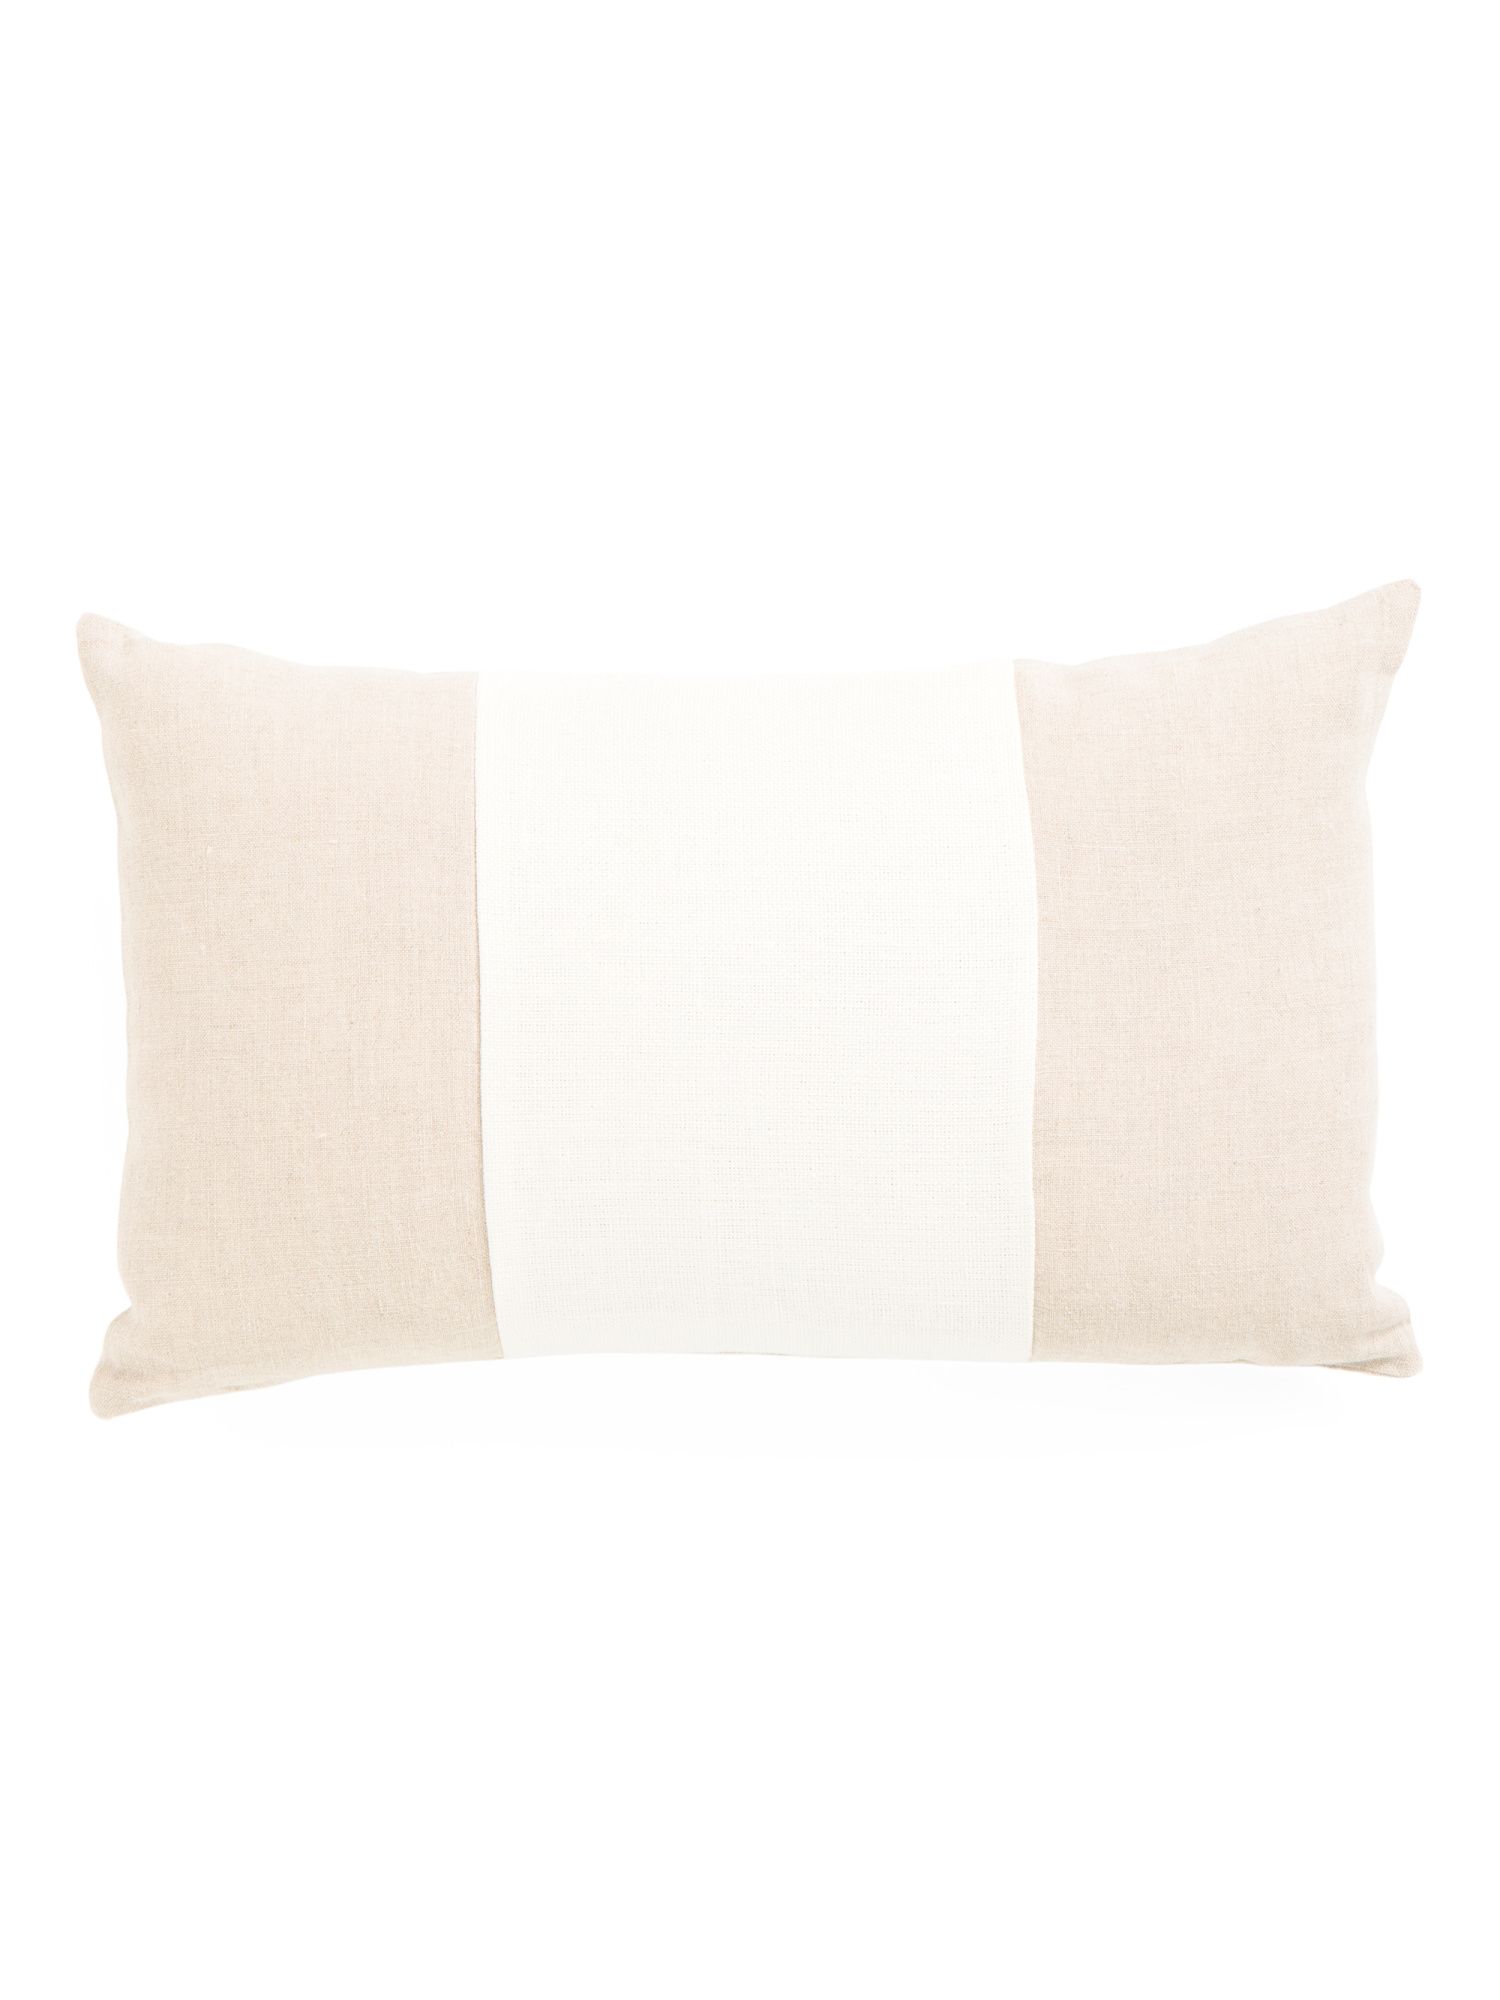 13x21 Linen Pillow | TJ Maxx